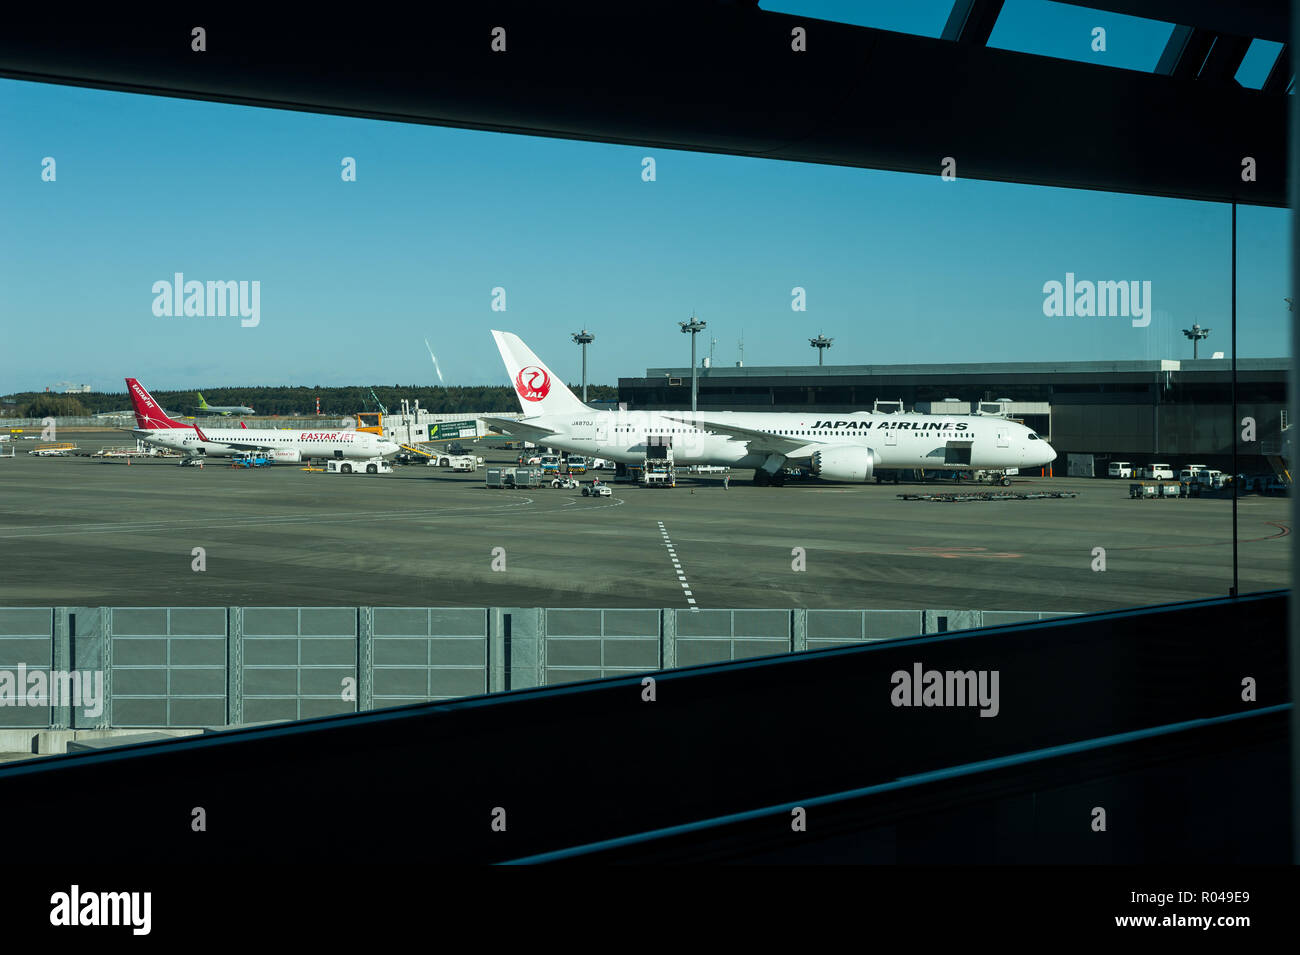 Tokyo, Japan, Japan Airlines passenger aircraft at Narita Airport Stock Photo